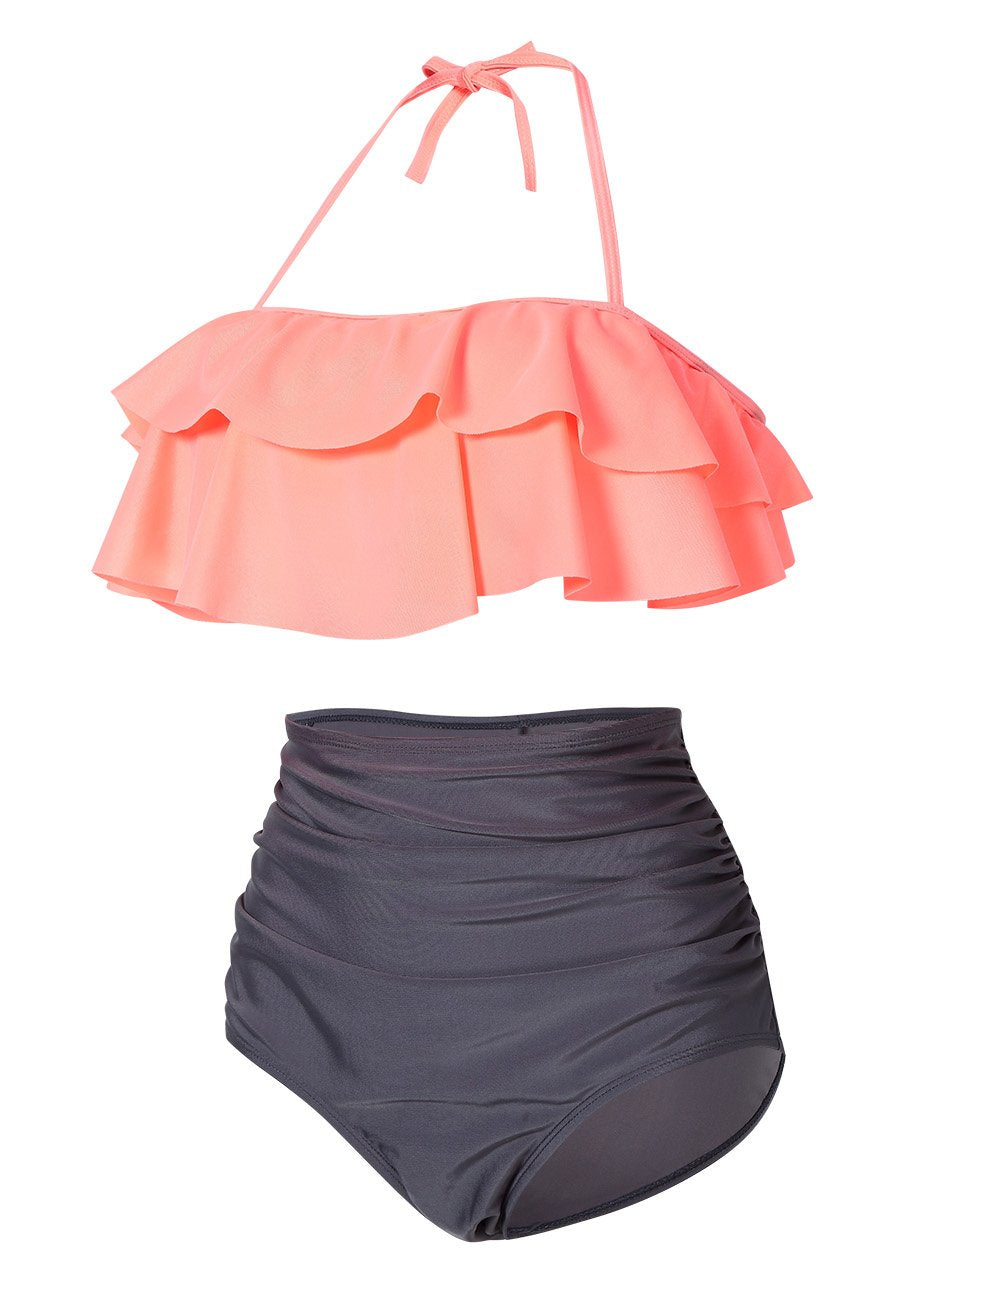 YESFASHION Women's Boho Flounce Falbala Ruffle Bikini Set Swimwear